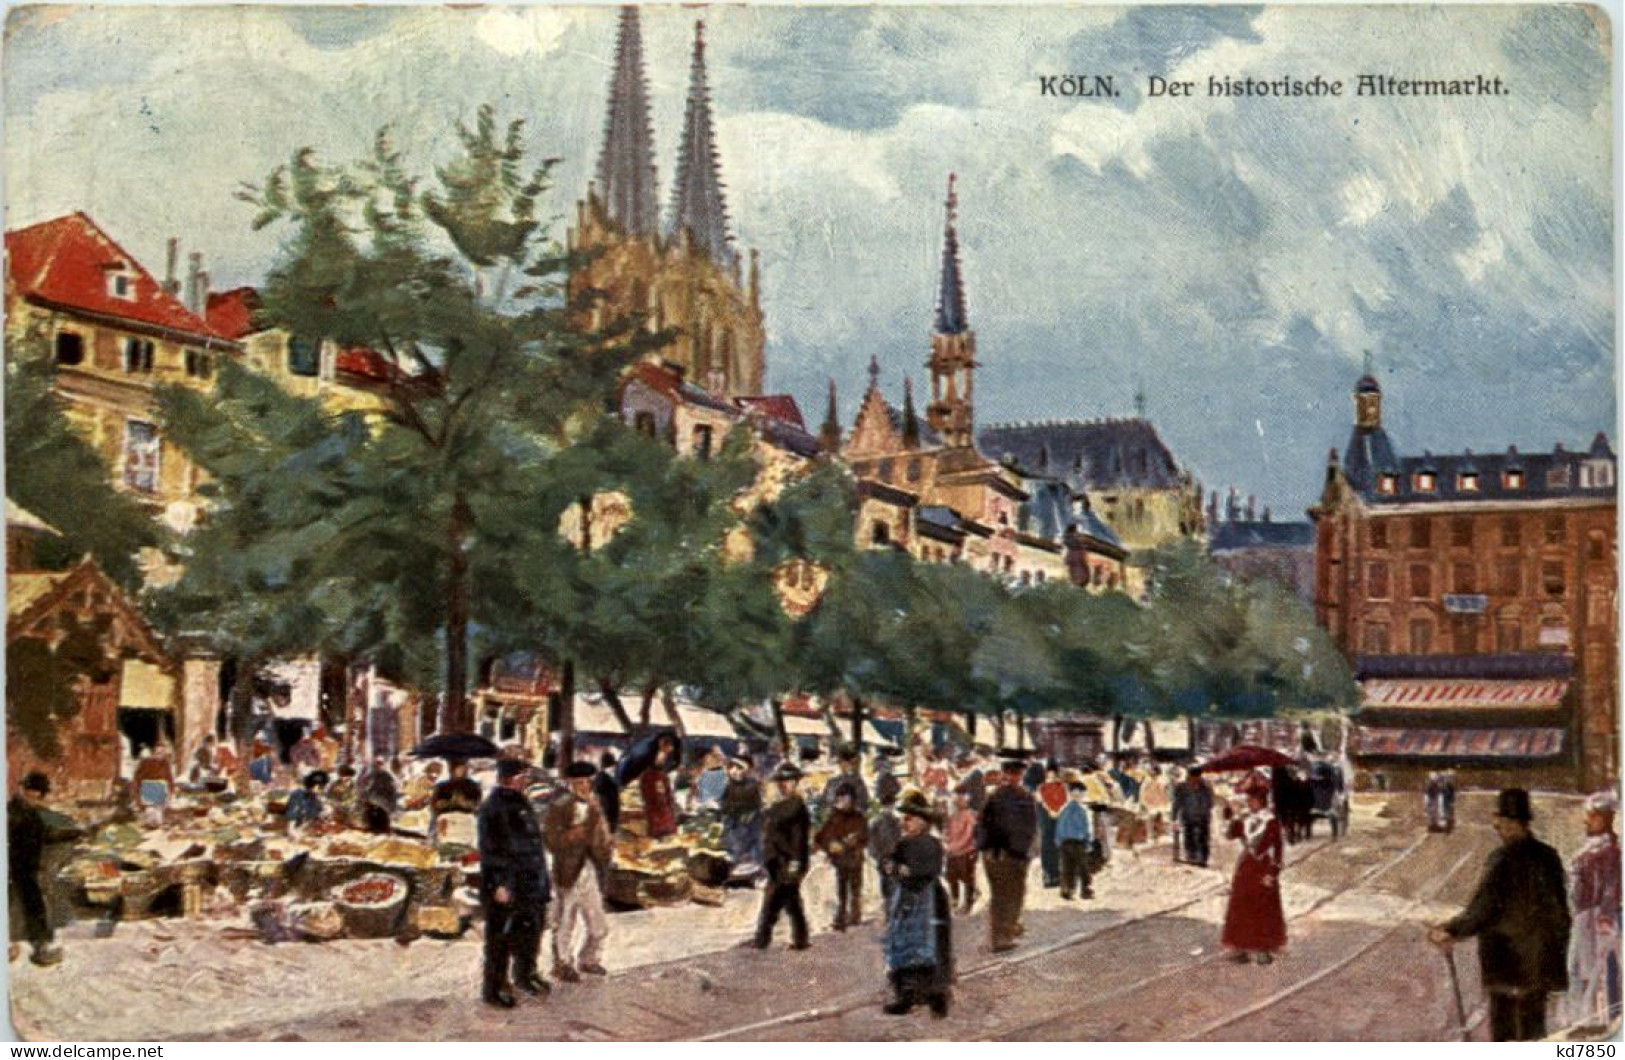 Köln, Der Historische Altermarkt - Köln